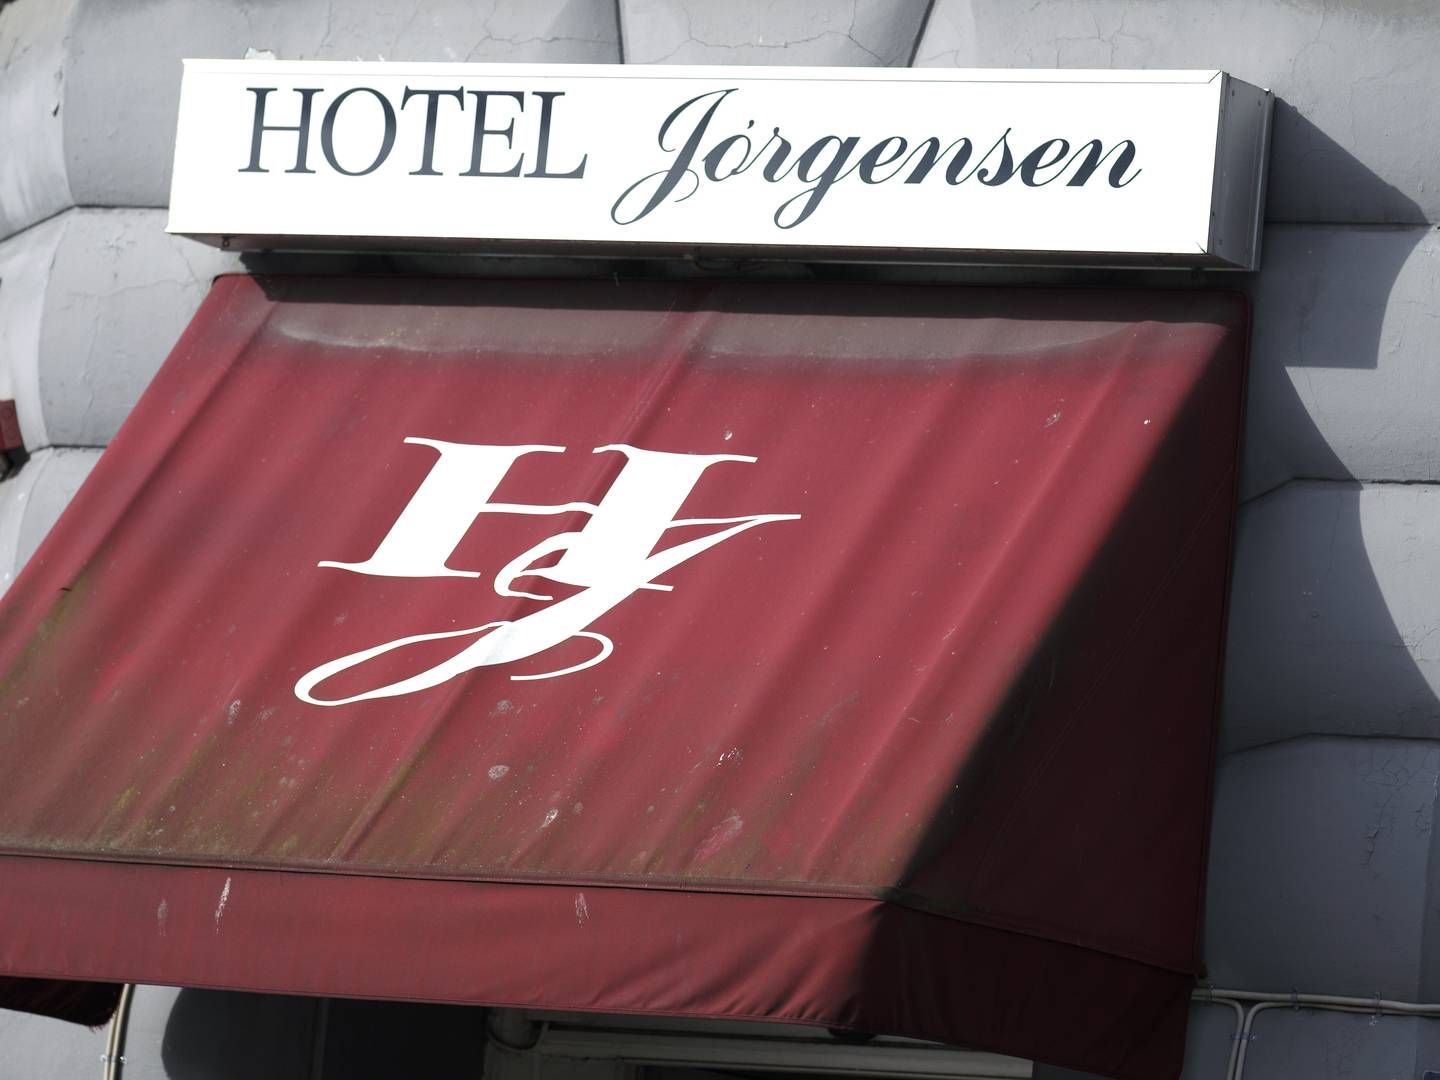 Hotel Jørgensen på Israels Plads, hvor eksplosionen fandt sted i 2010. | Foto: Jens Dresling